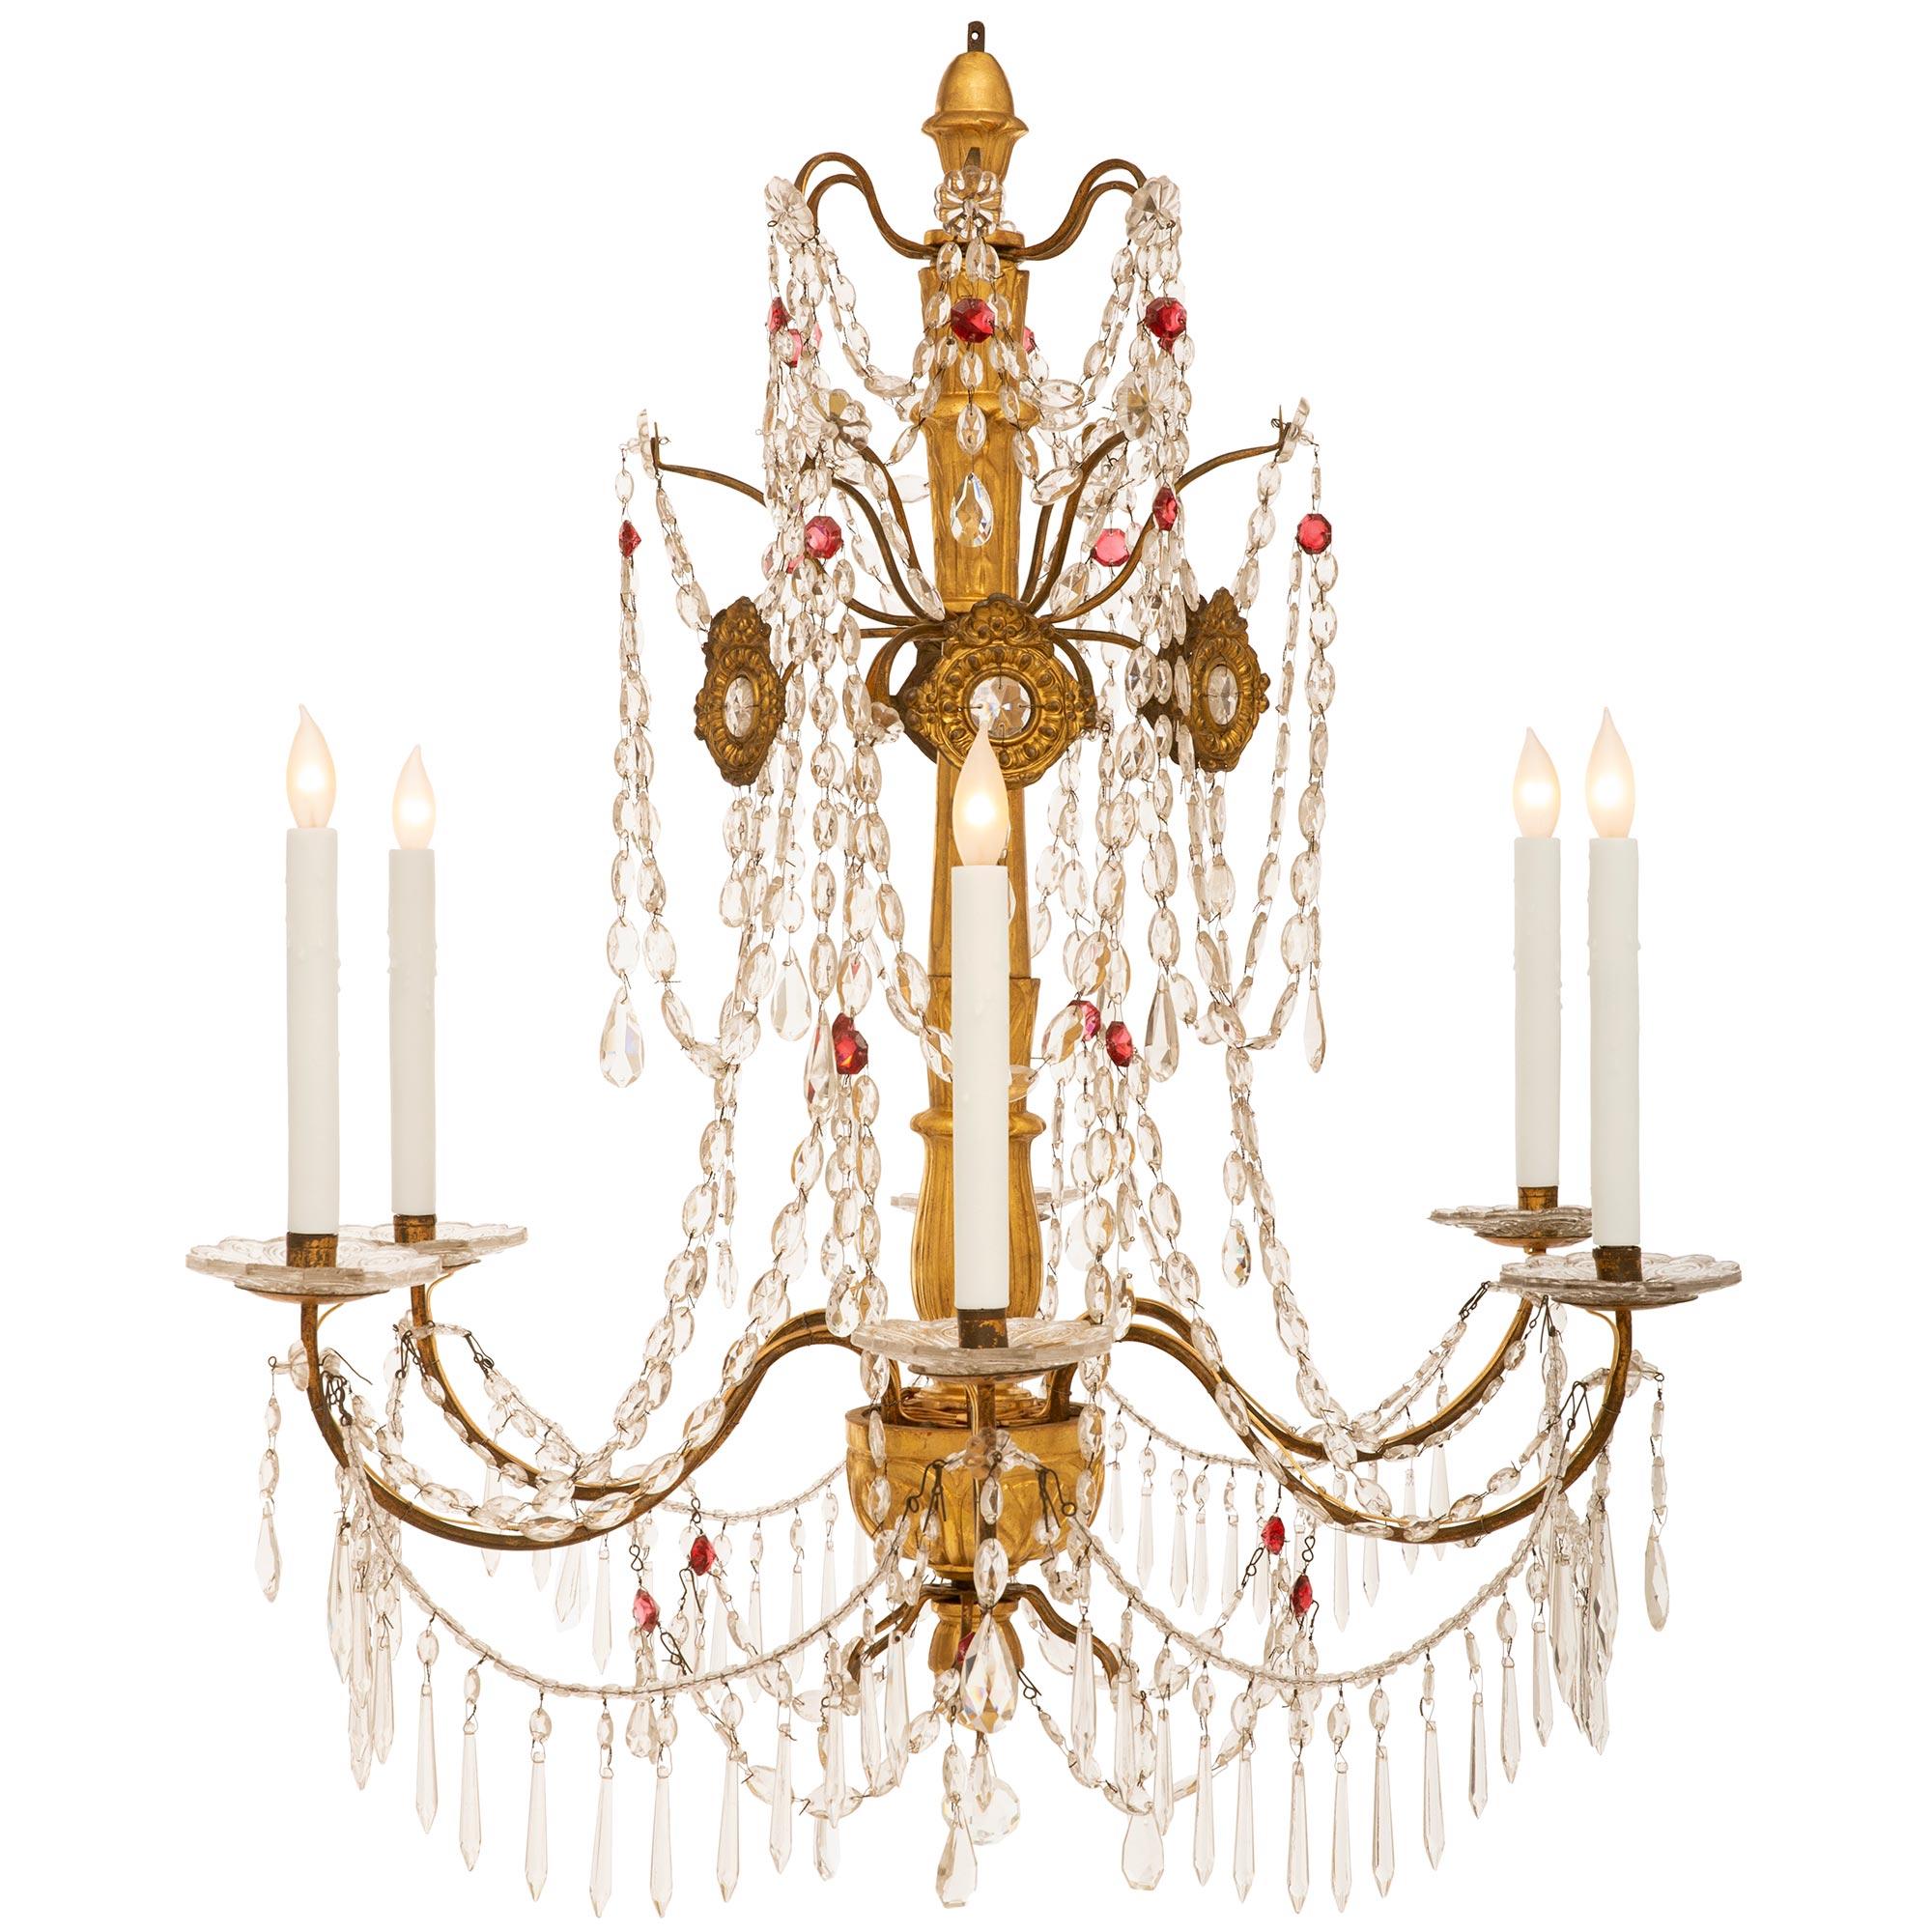 Magnifique et très élégante paire de lustres italiens du XVIIIe siècle en bois doré, verre, fer et cristal de la région de Gênes. Chaque lustre à six branches est centré par un charmant épi de faîtage en bois doré, entouré de charmantes pampilles en